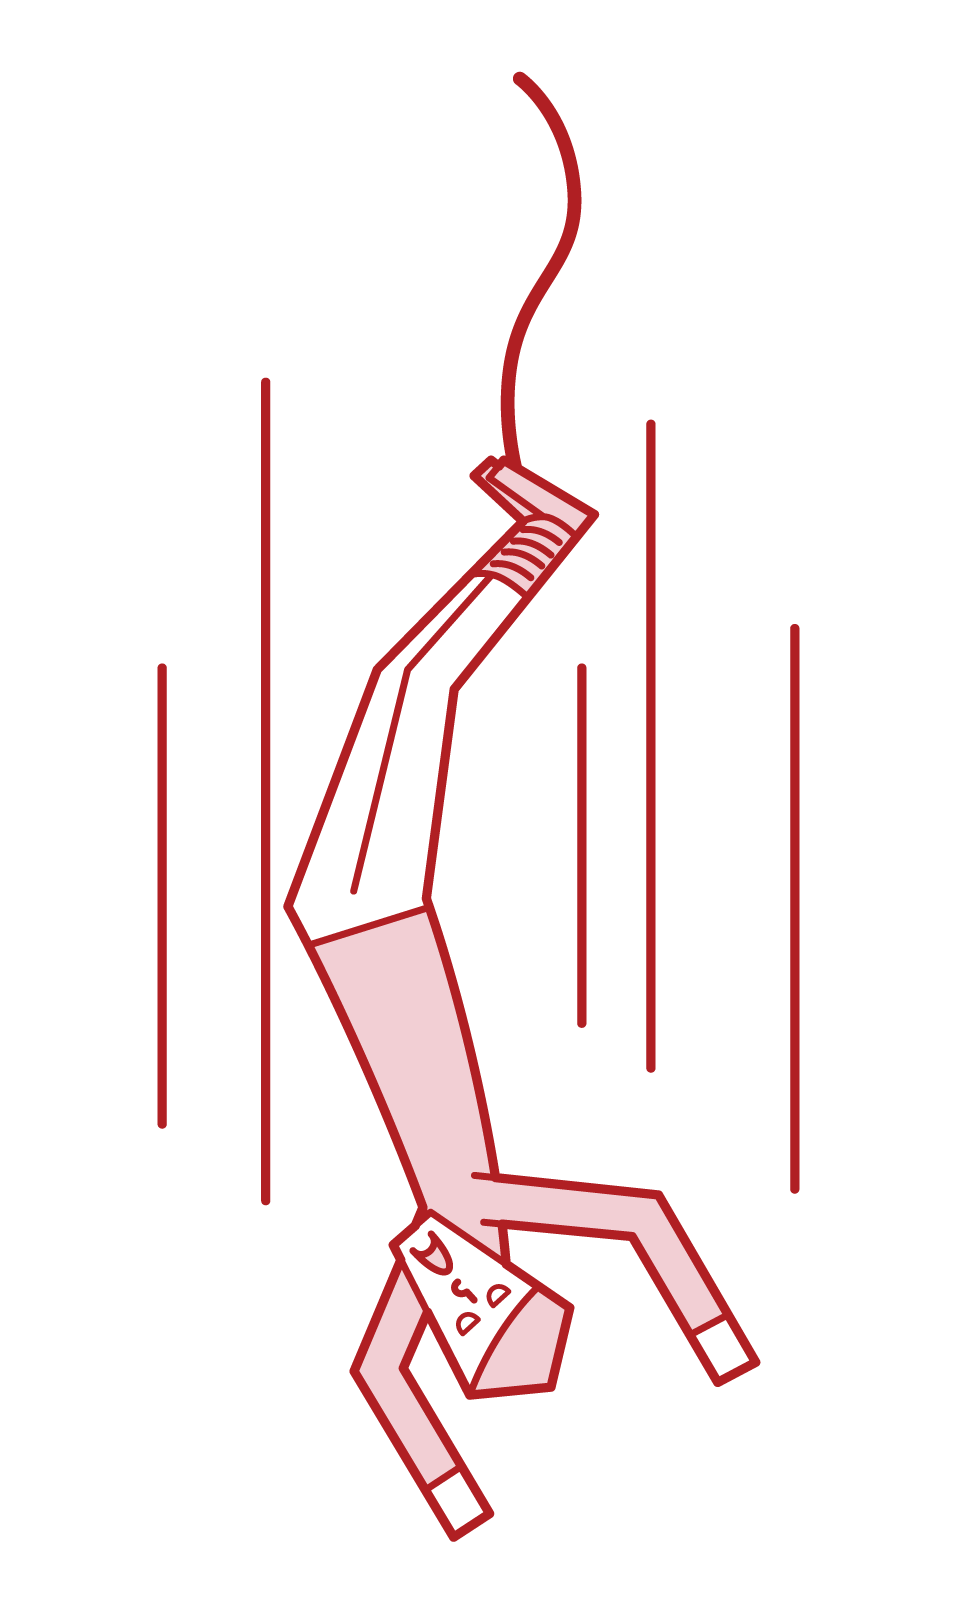 번지 점프 (남성)의 그림